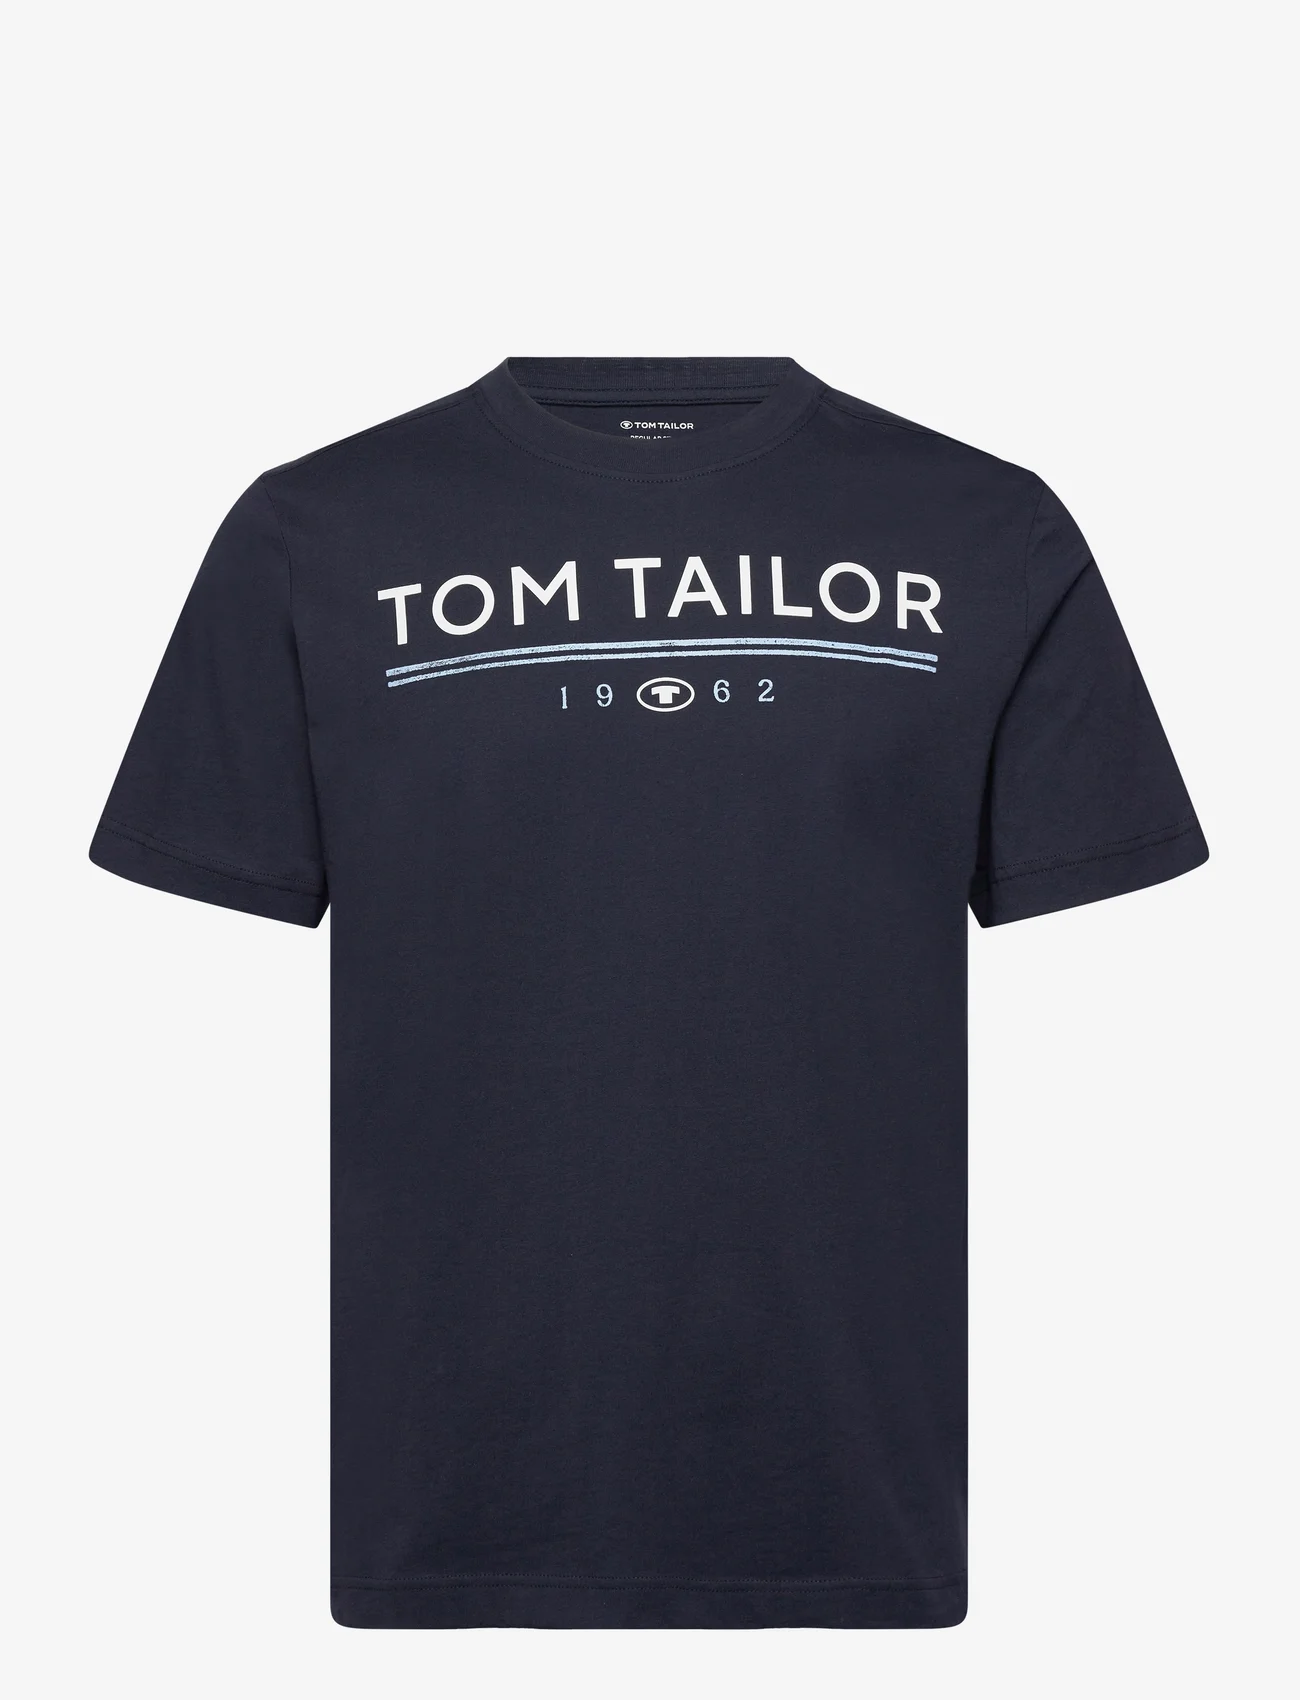 Tom Tailor - printed t-shirt - najniższe ceny - sky captain blue - 0